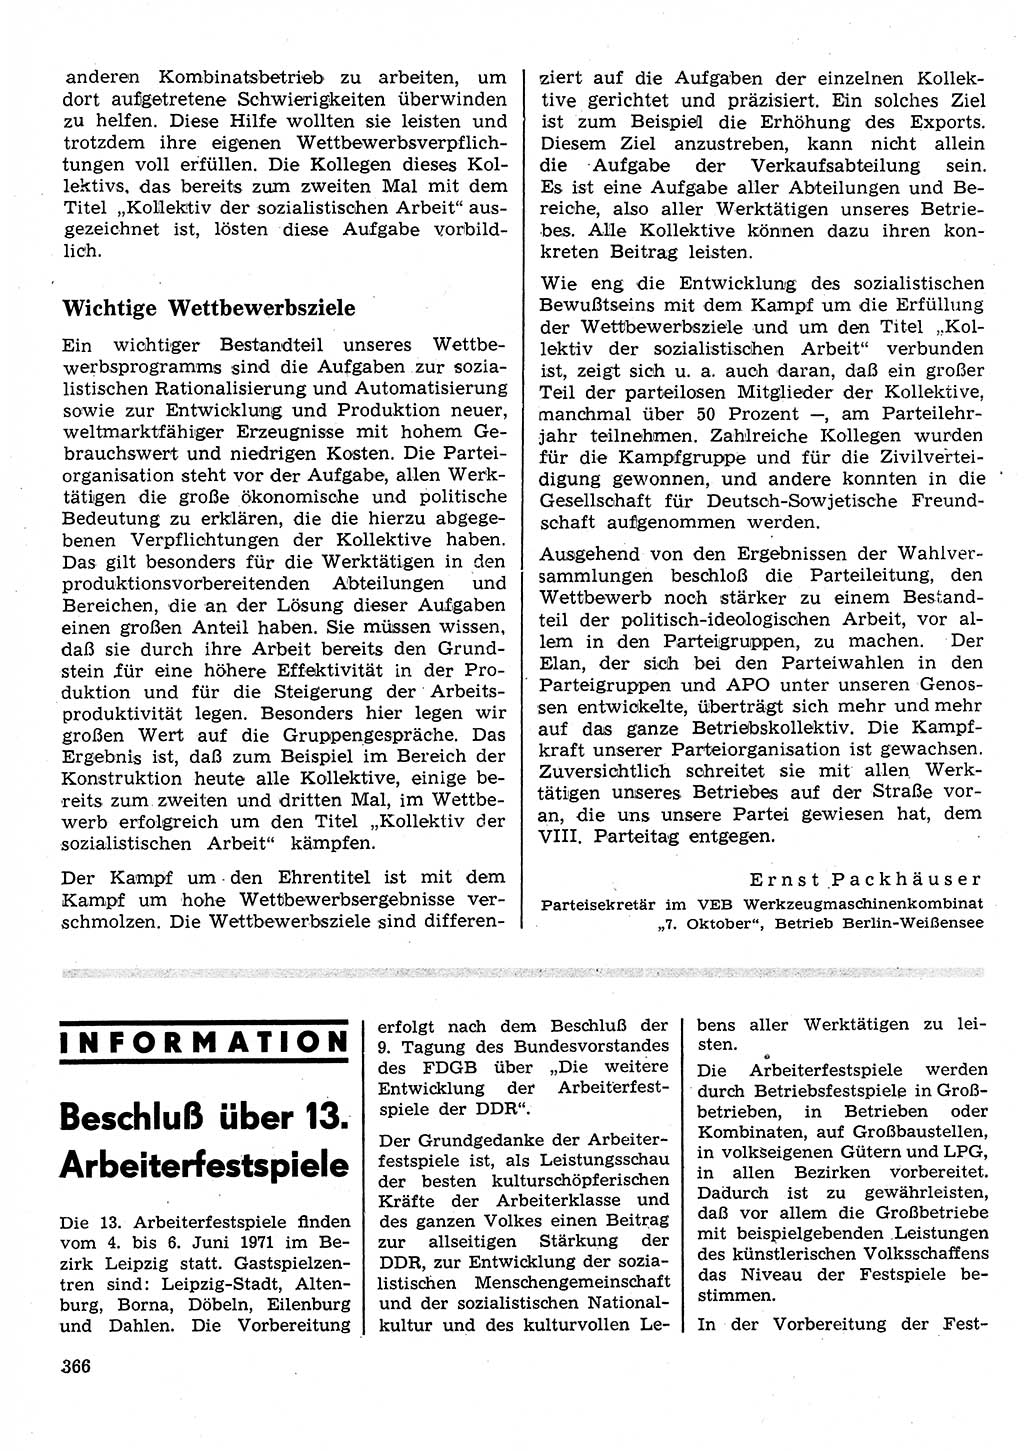 Neuer Weg (NW), Organ des Zentralkomitees (ZK) der SED (Sozialistische Einheitspartei Deutschlands) für Fragen des Parteilebens, 26. Jahrgang [Deutsche Demokratische Republik (DDR)] 1971, Seite 366 (NW ZK SED DDR 1971, S. 366)